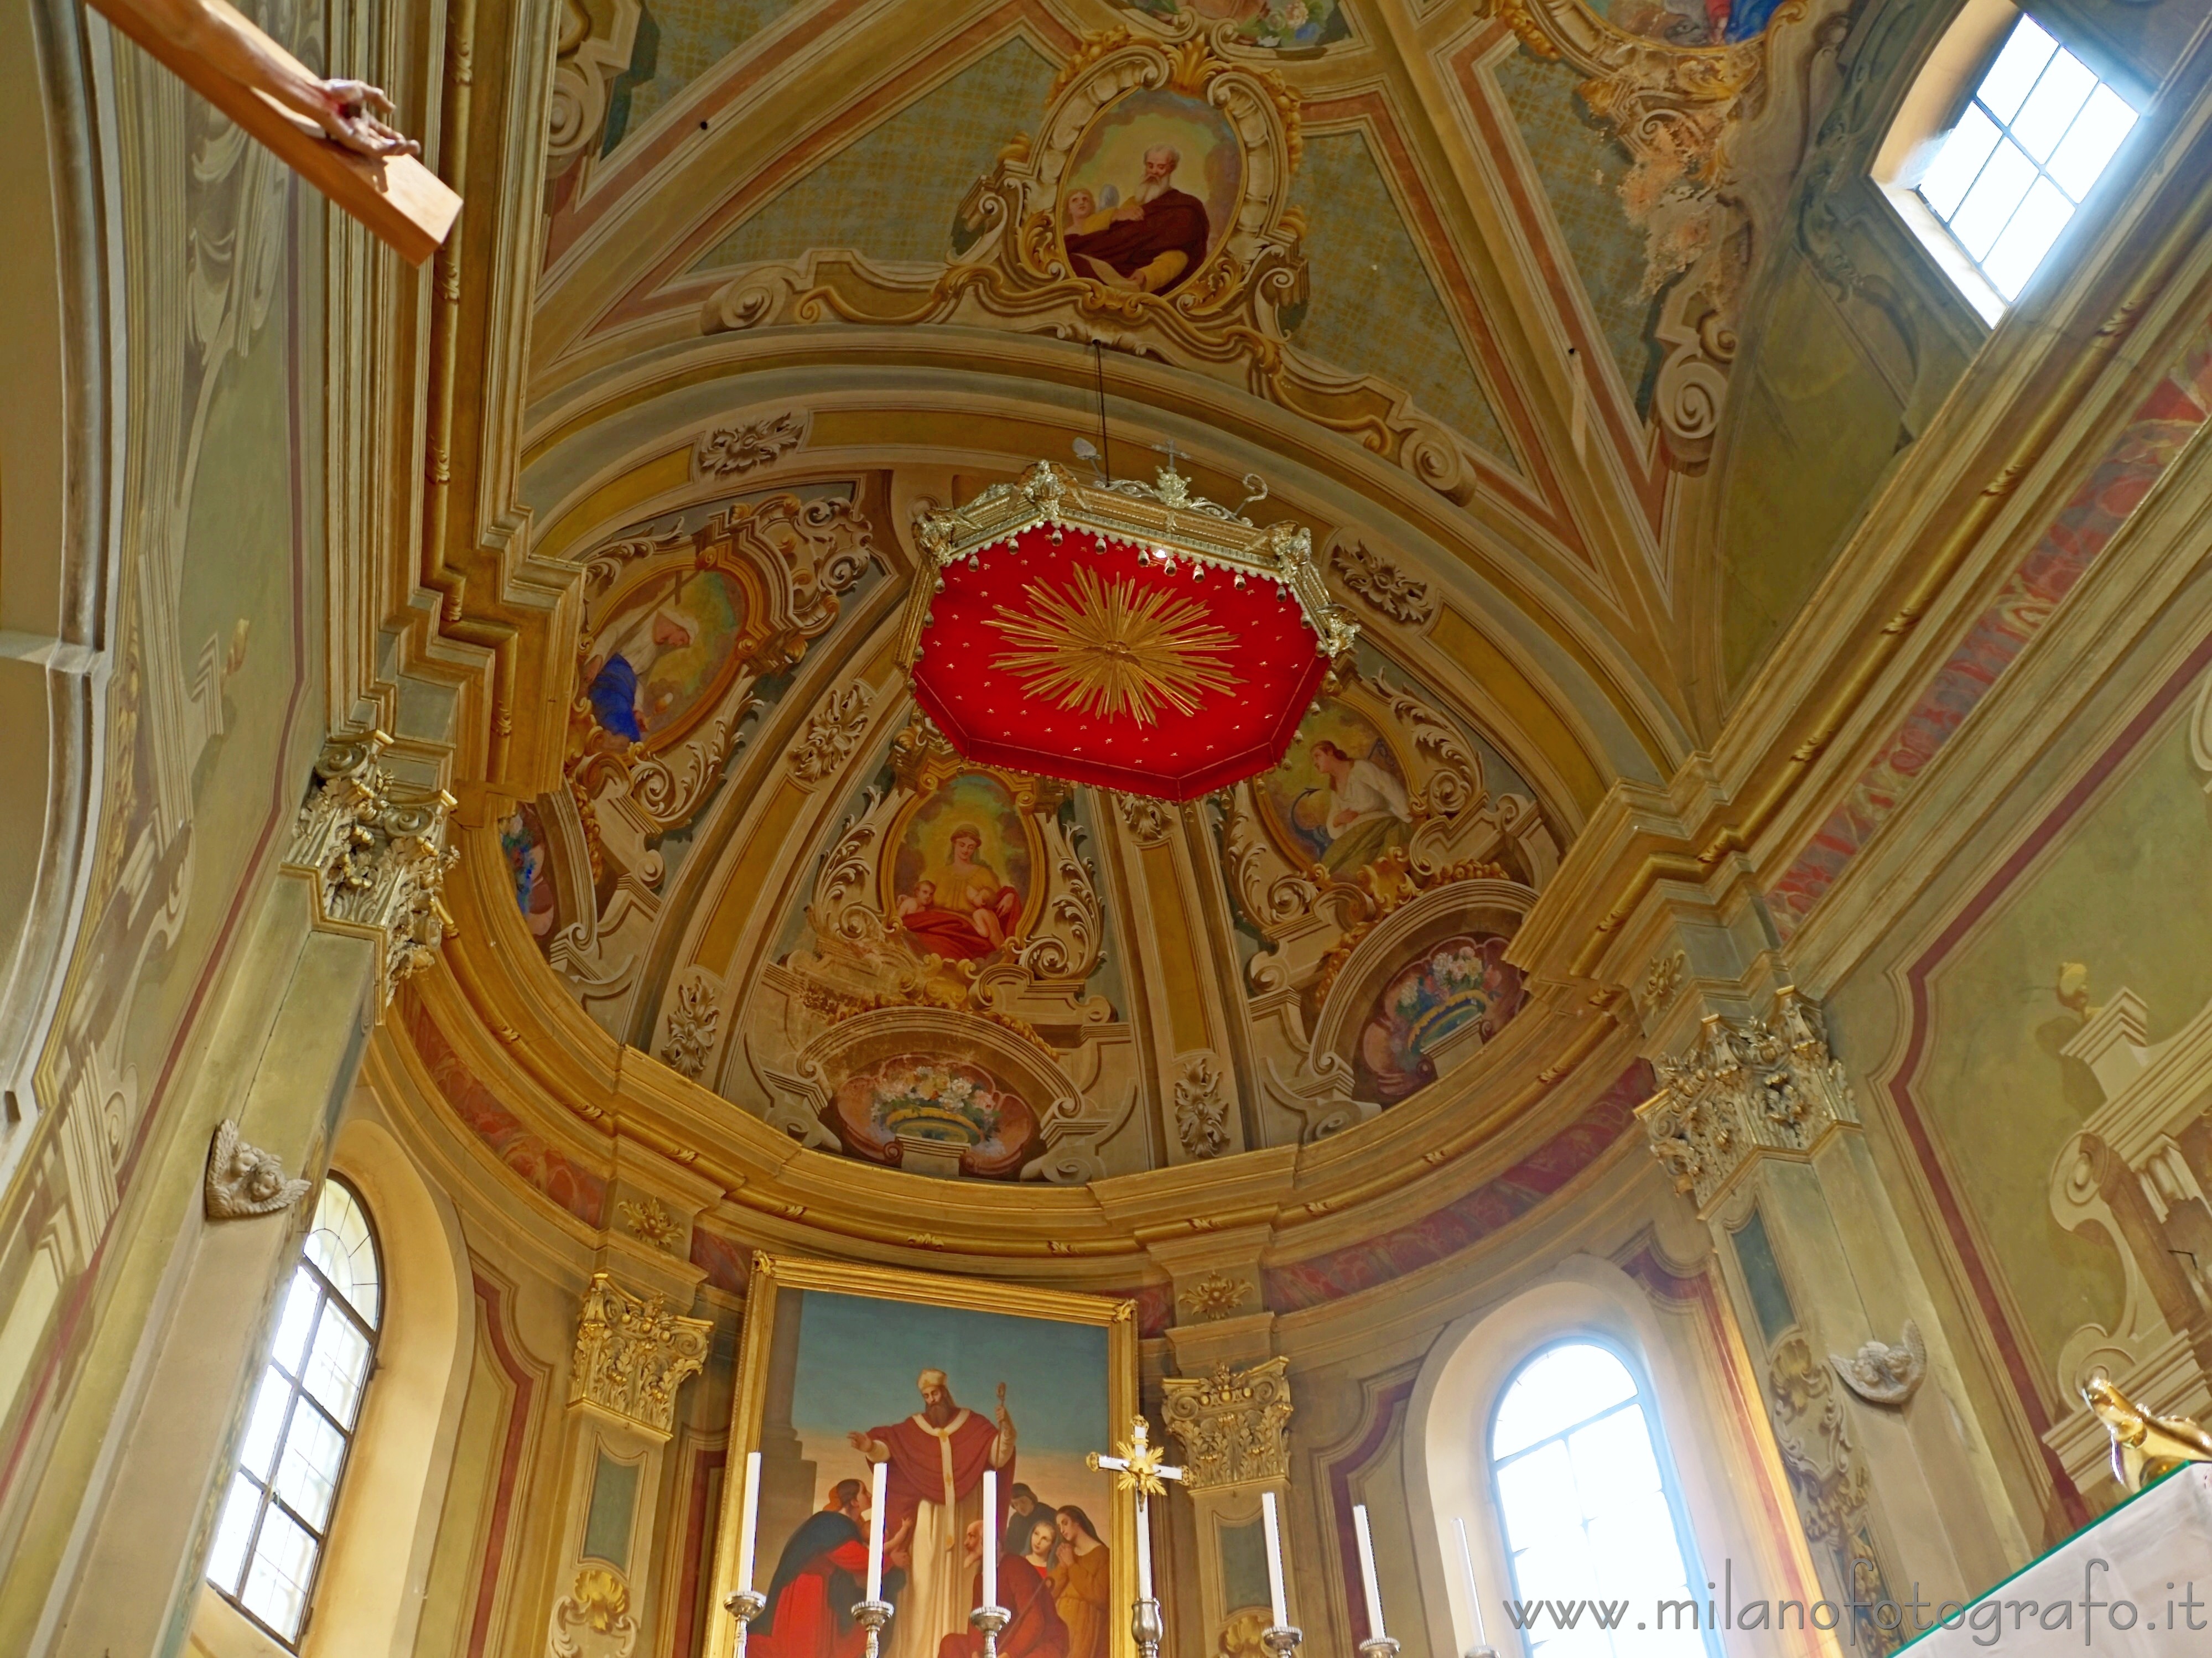 Tollegno (Biella, Italy): Decorated aps of the Church of San Germano - Tollegno (Biella, Italy)